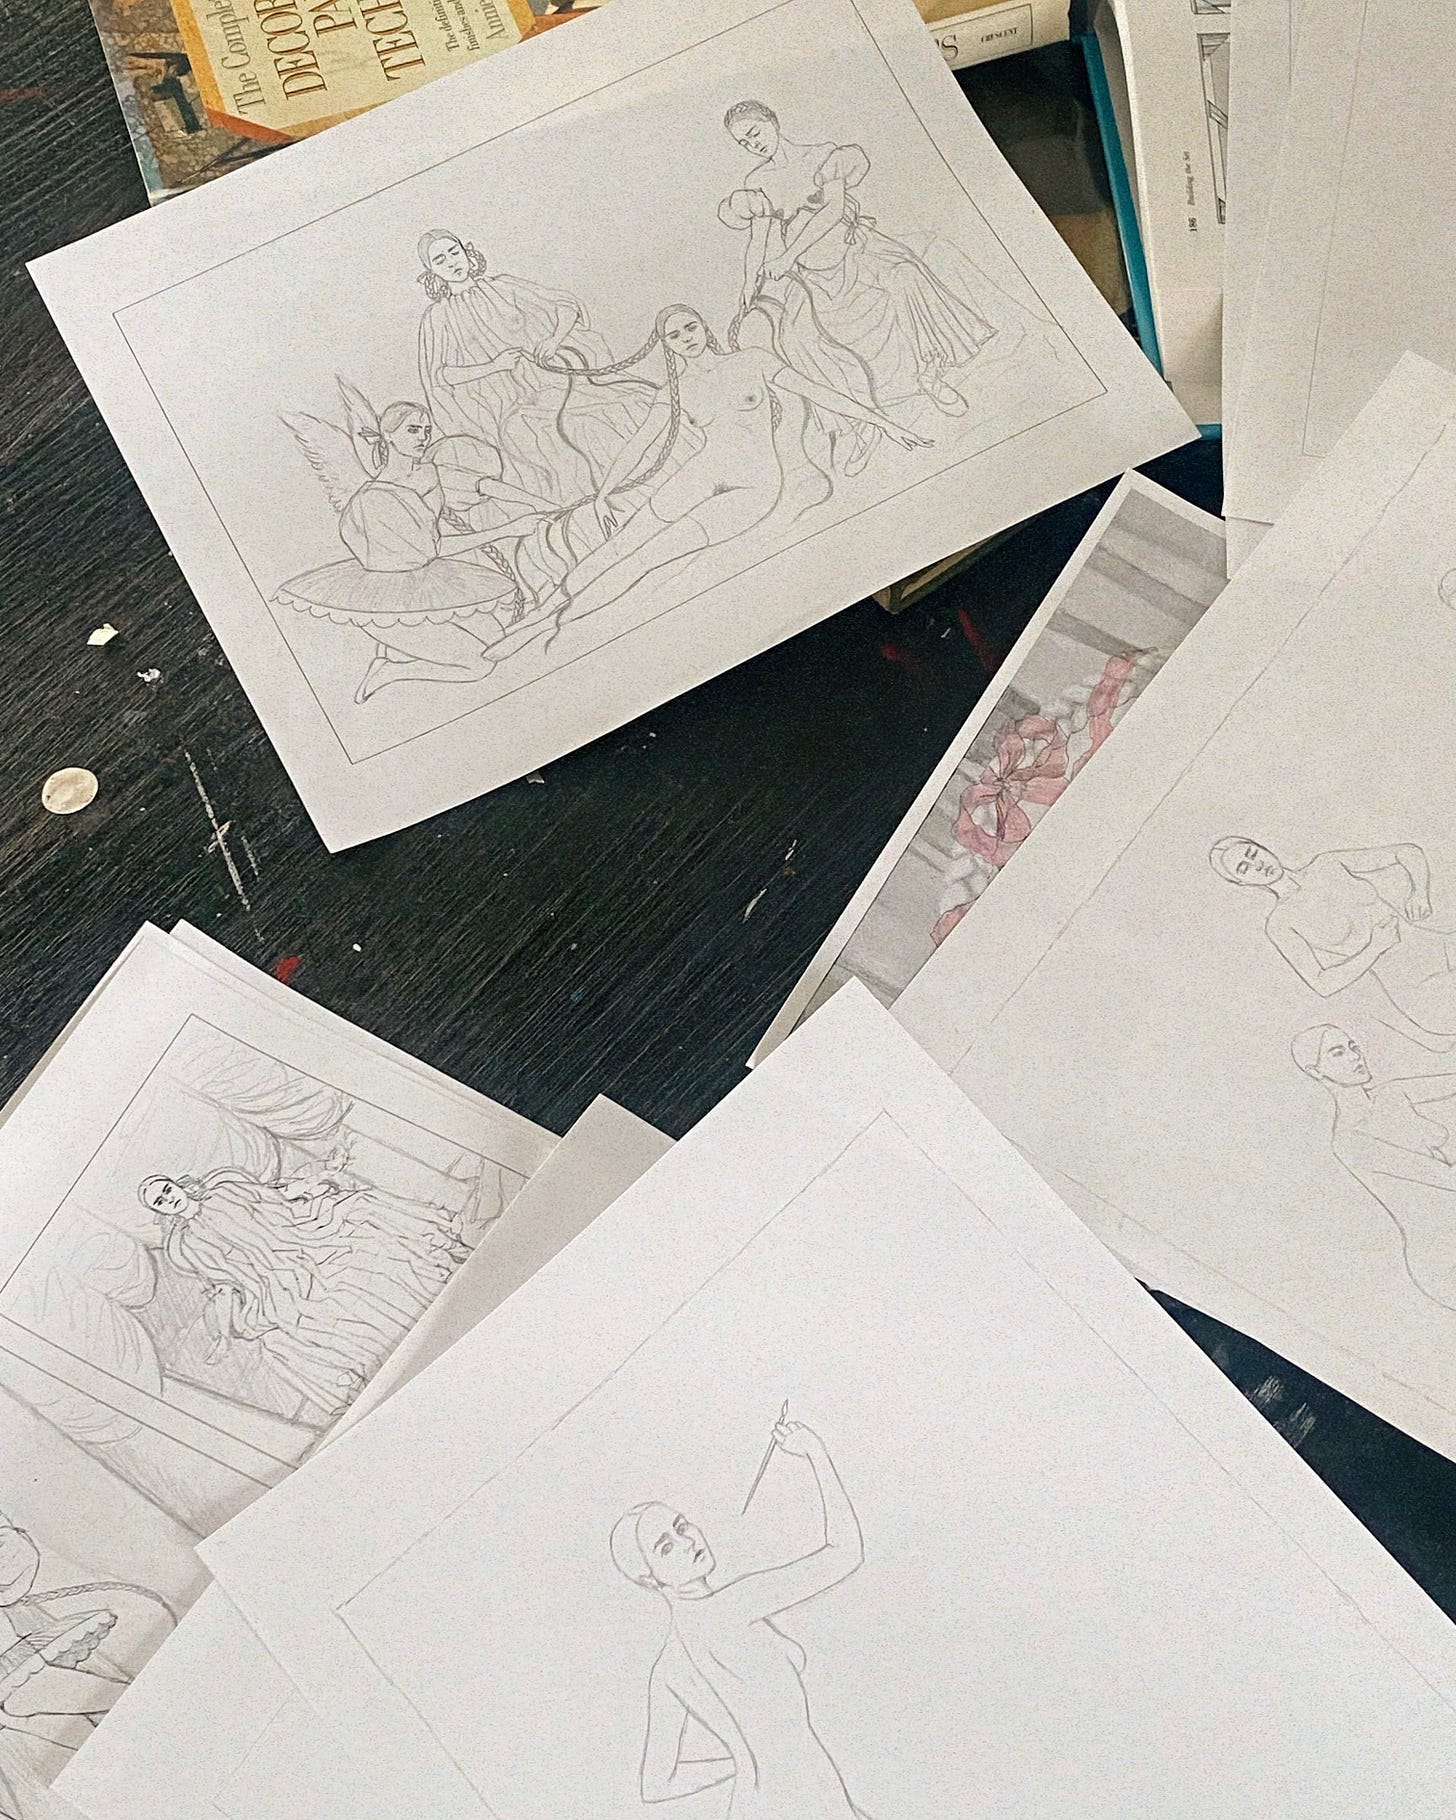  Jeanine Brito Studio sketches